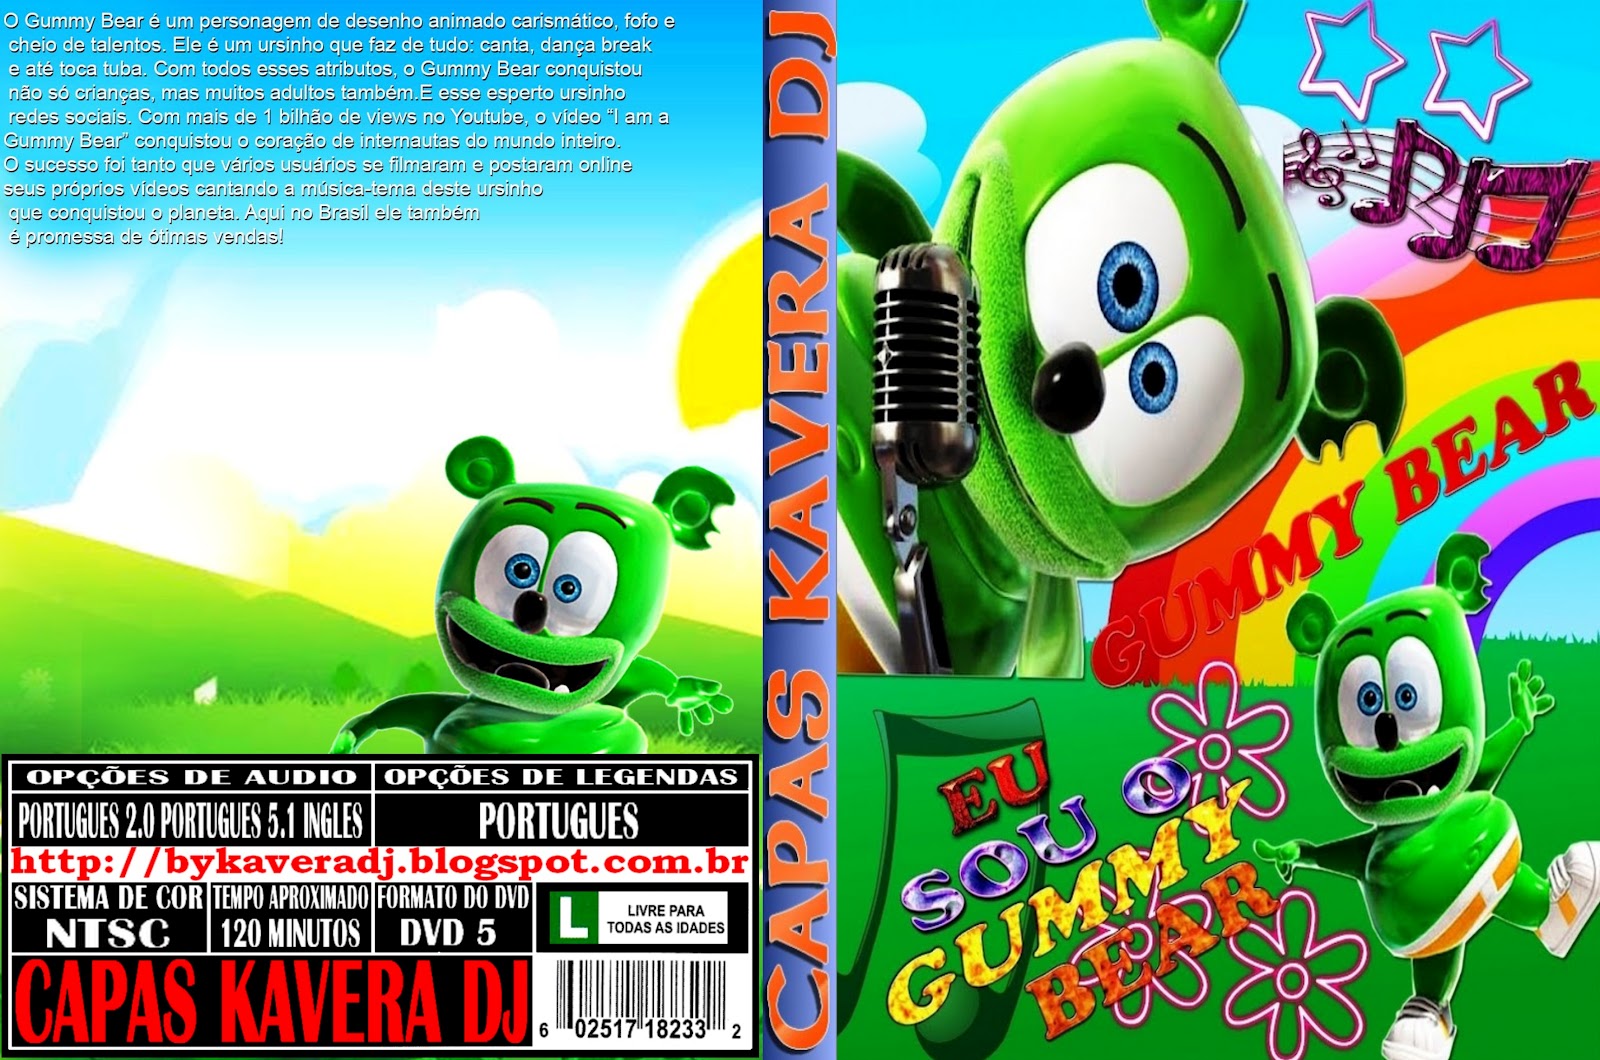 Baixar Dvd Do Gummy Bear Gratis Em Portugues